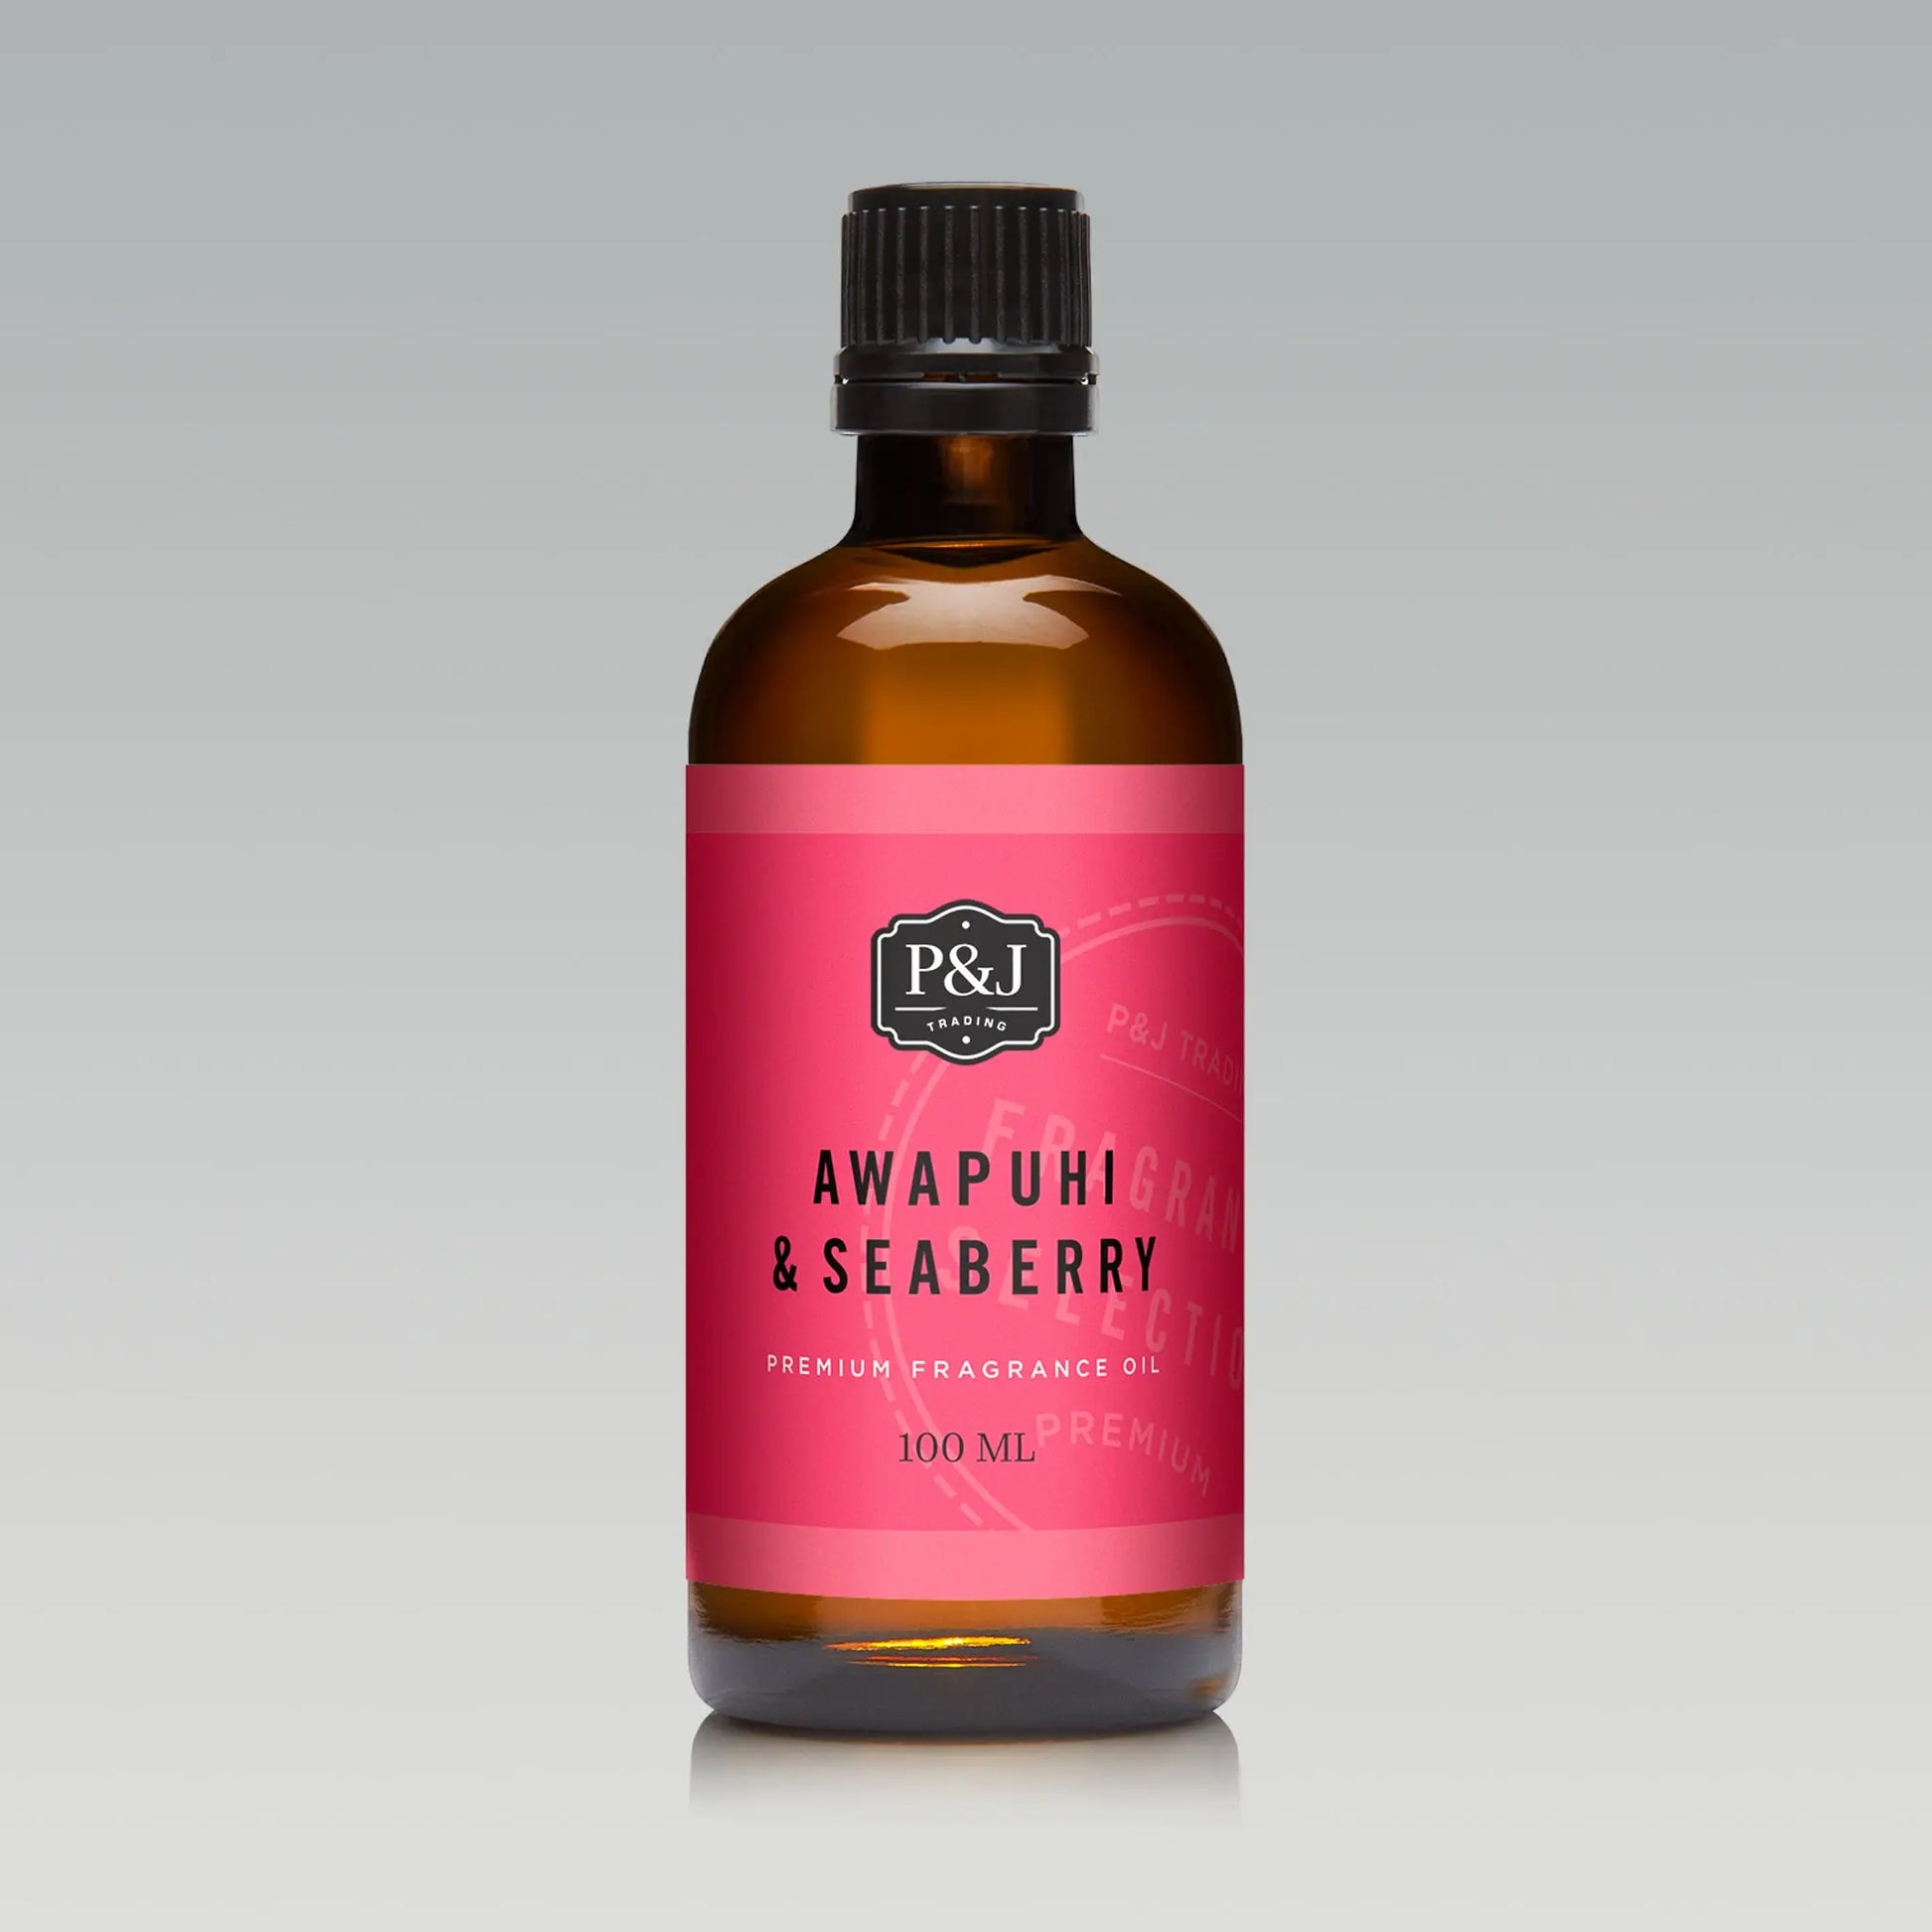 Awapuhi & Seaberry Fragrance Oil